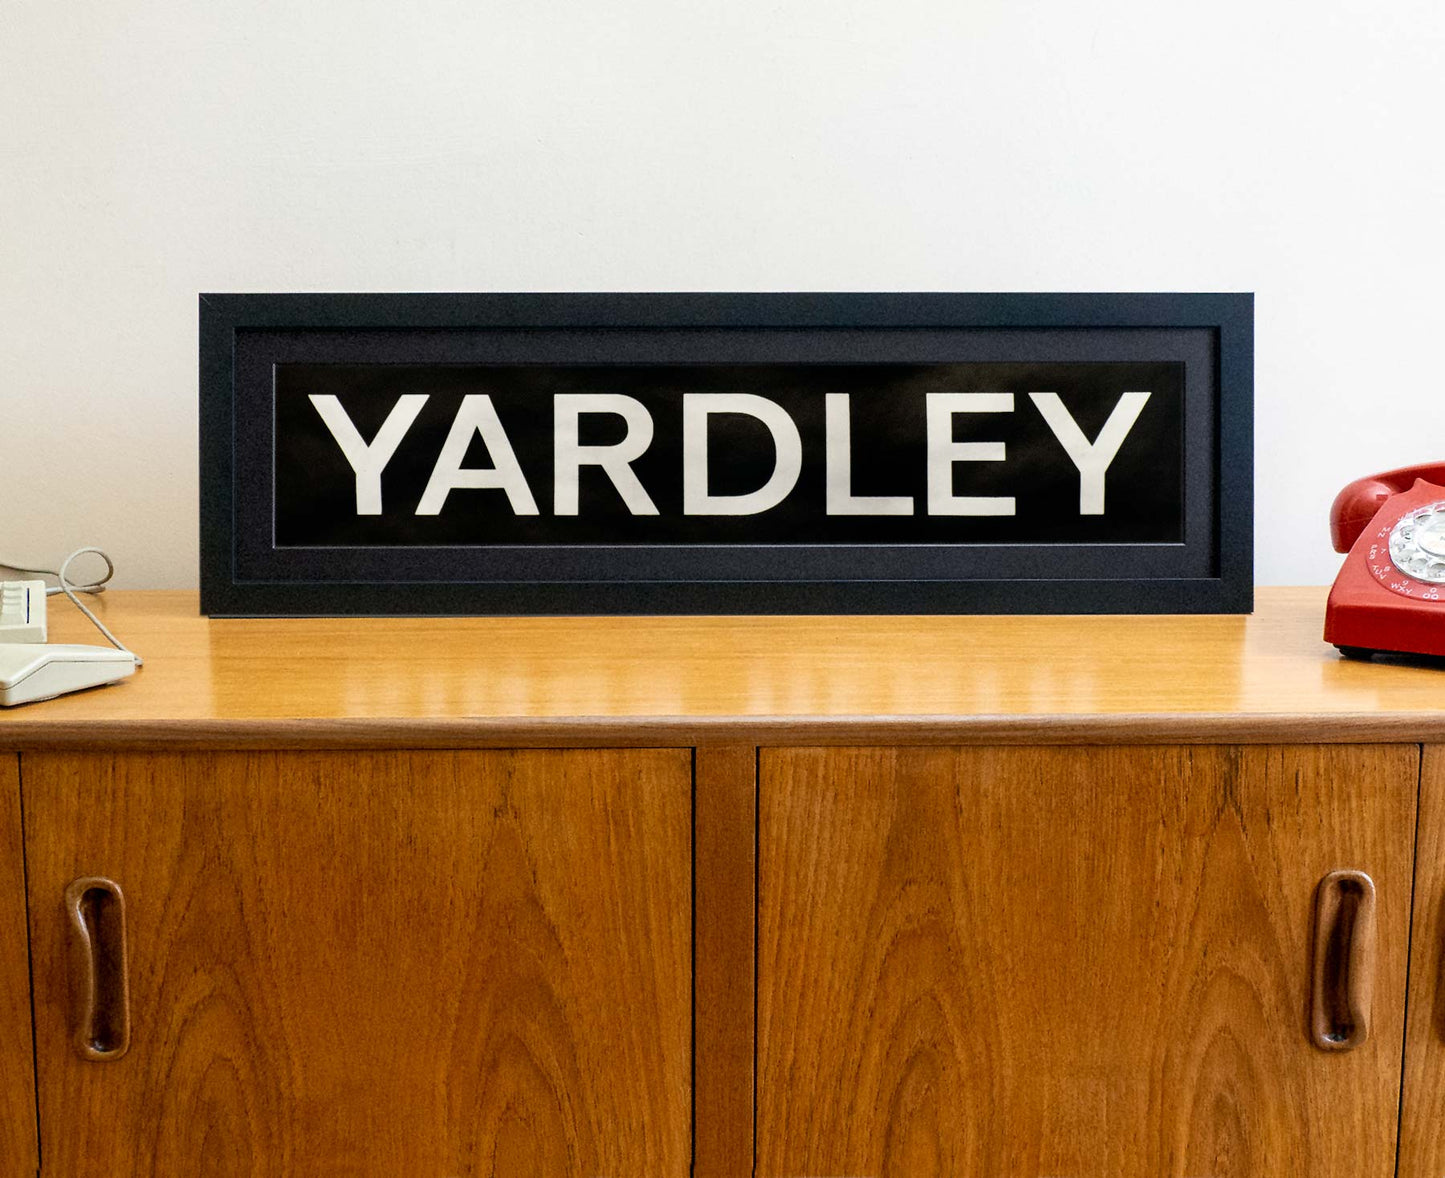 Yardley 1990s framed original bus blind